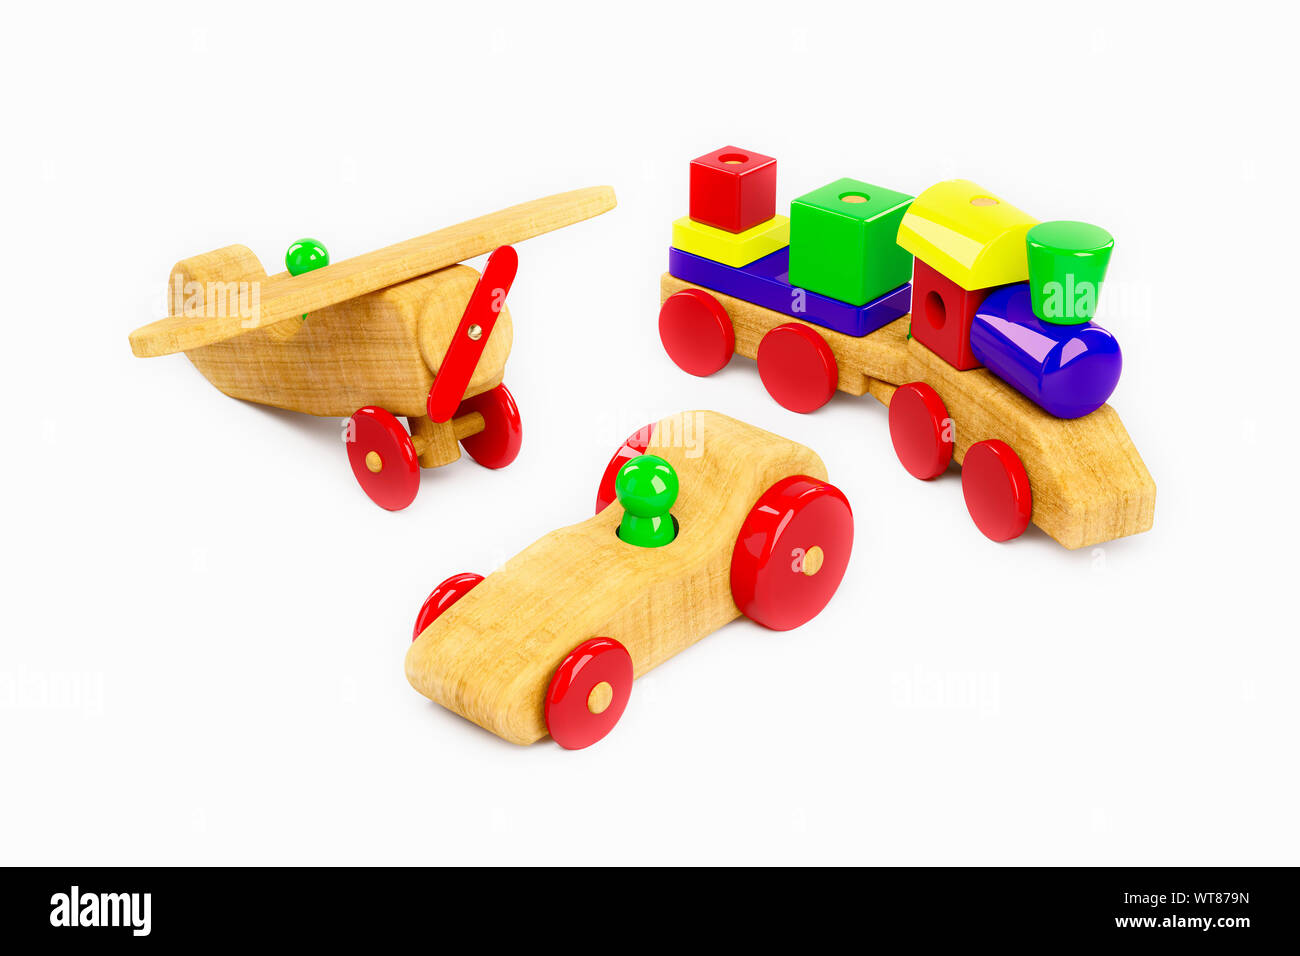 Avion en bois, train et voiture de course, une sélection de jouets en bois pour enfants sur un fond blanc Banque D'Images